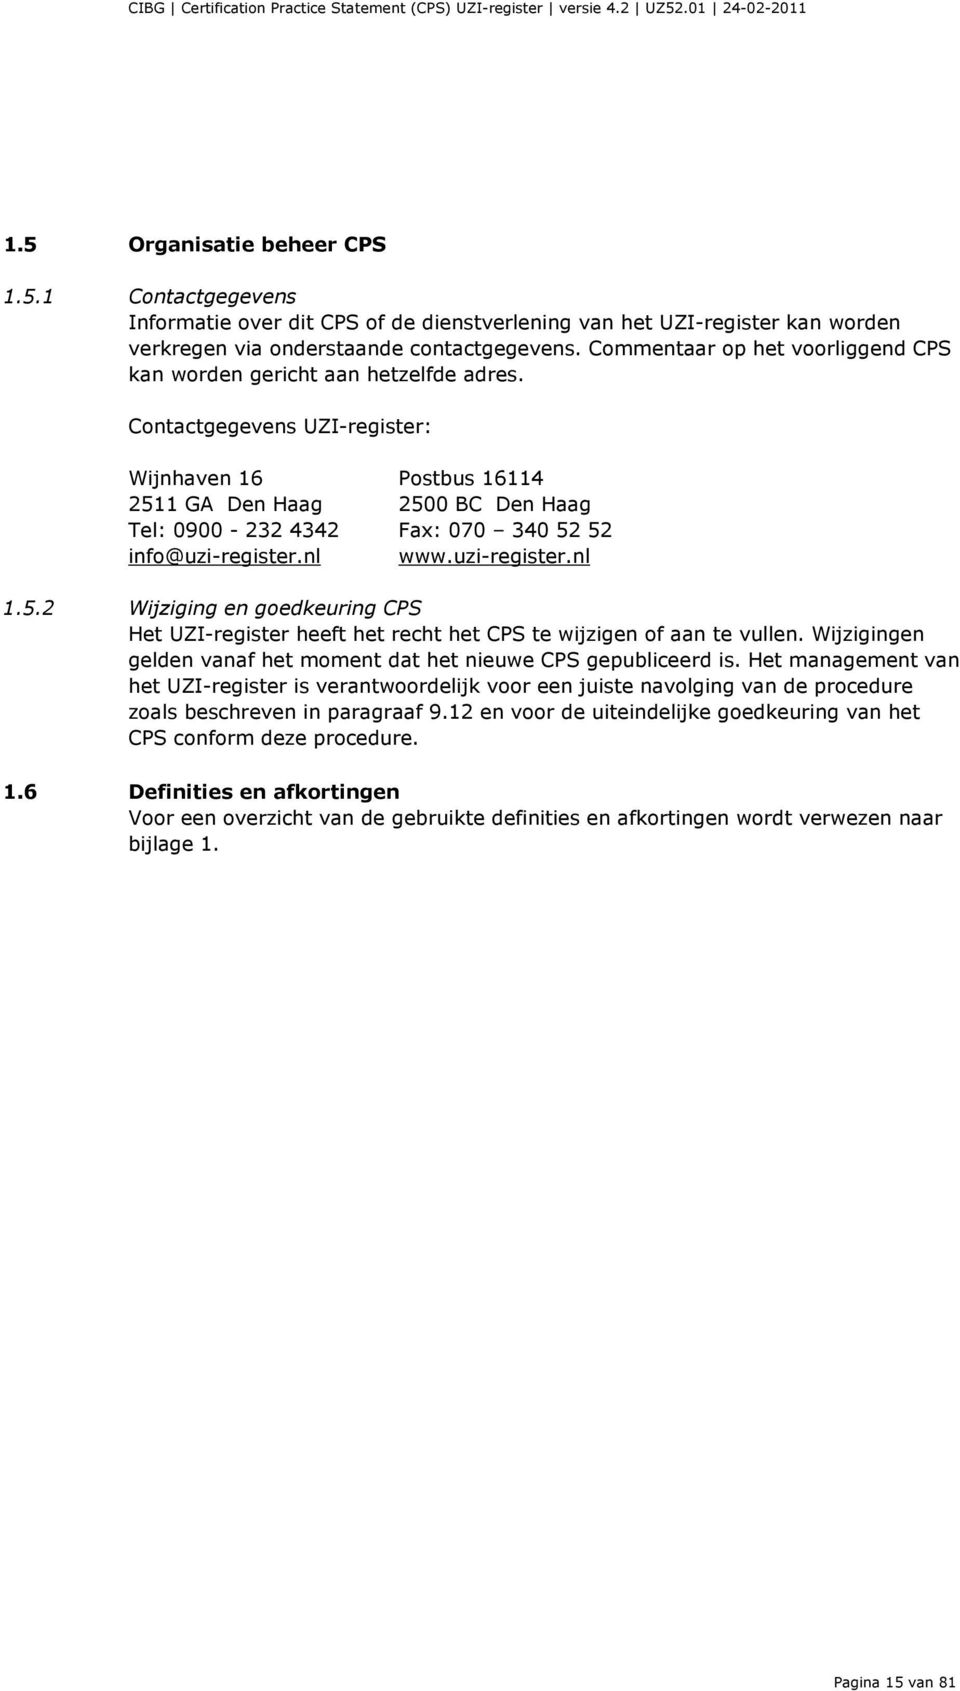 Contactgegevens UZI-register: Wijnhaven 16 Postbus 16114 2511 GA Den Haag 2500 BC Den Haag Tel: 0900-232 4342 Fax: 070 340 52 52 info@uzi-register.nl www.uzi-register.nl 1.5.2 Wijziging en goedkeuring CPS Het UZI-register heeft het recht het CPS te wijzigen of aan te vullen.